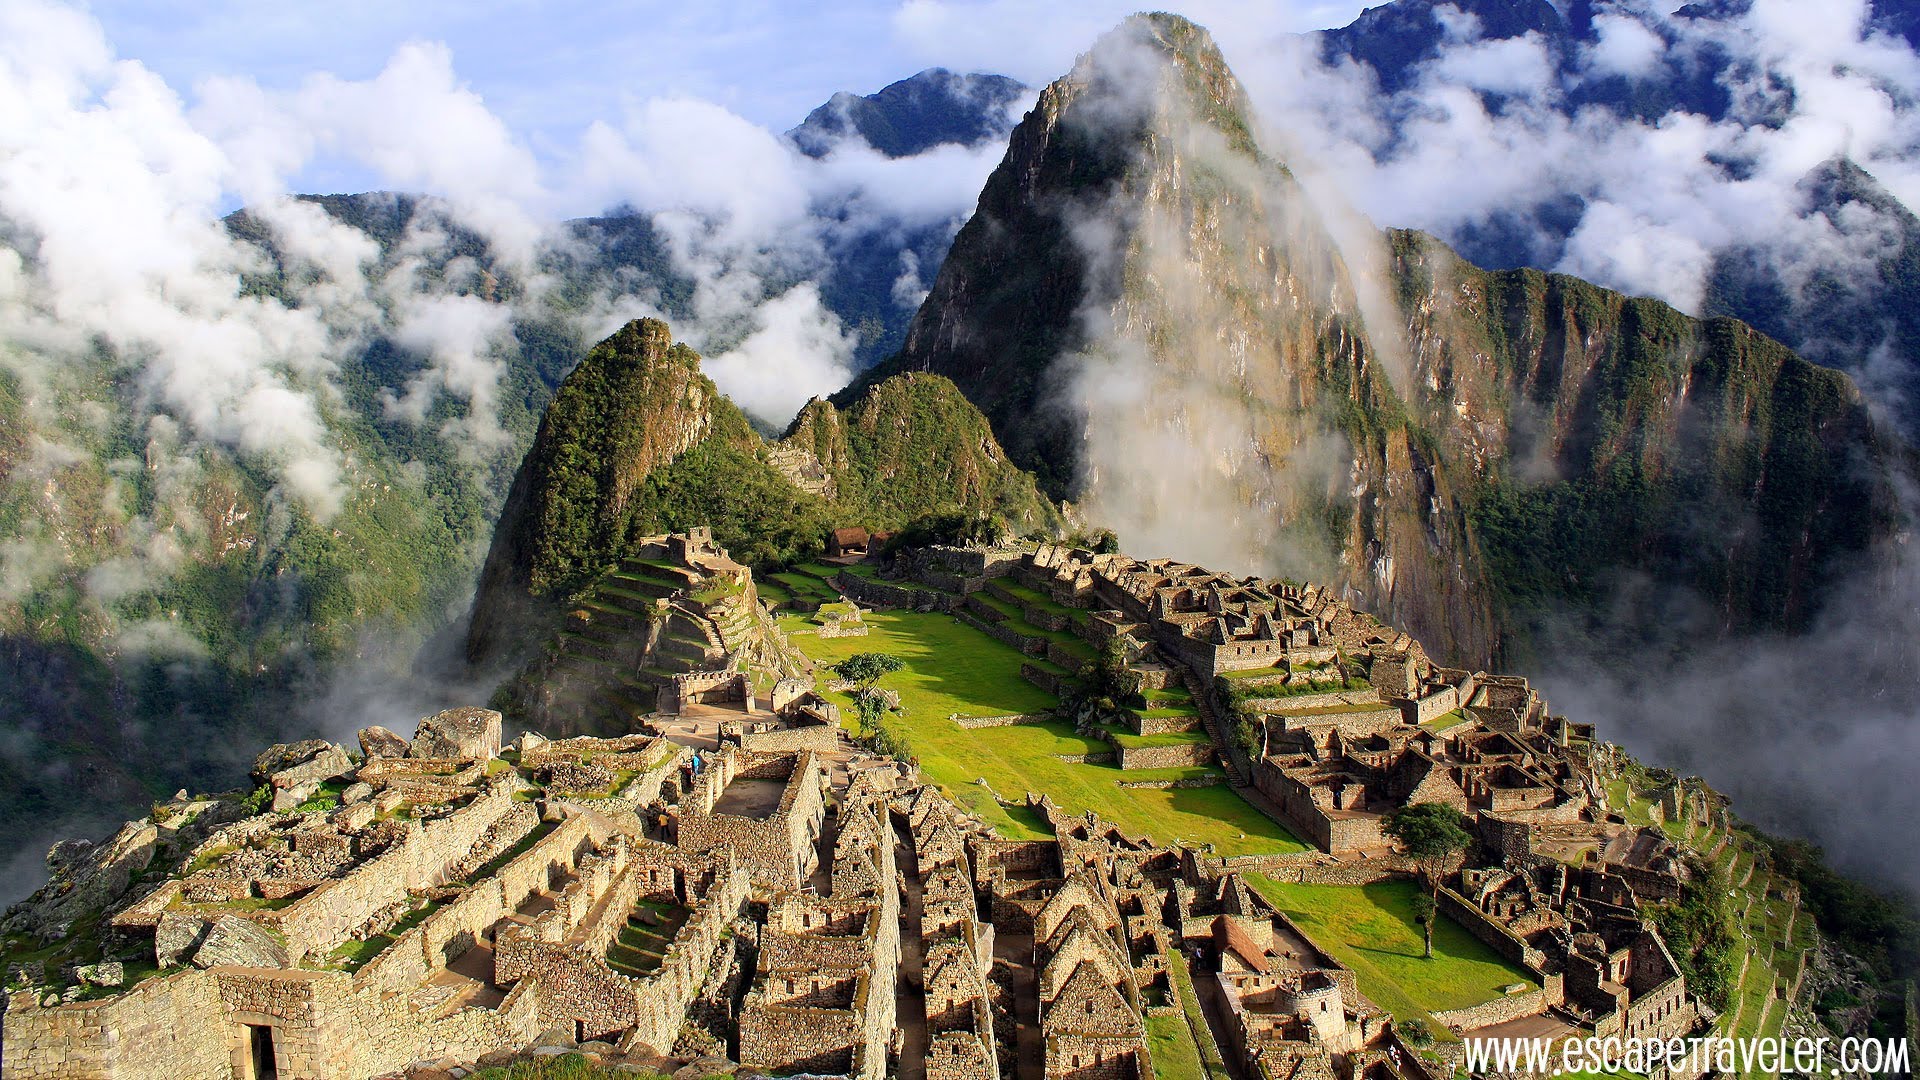 Com, Machu Picchu In Peru - Machu Picchu - 1920x1080 Wallpaper 